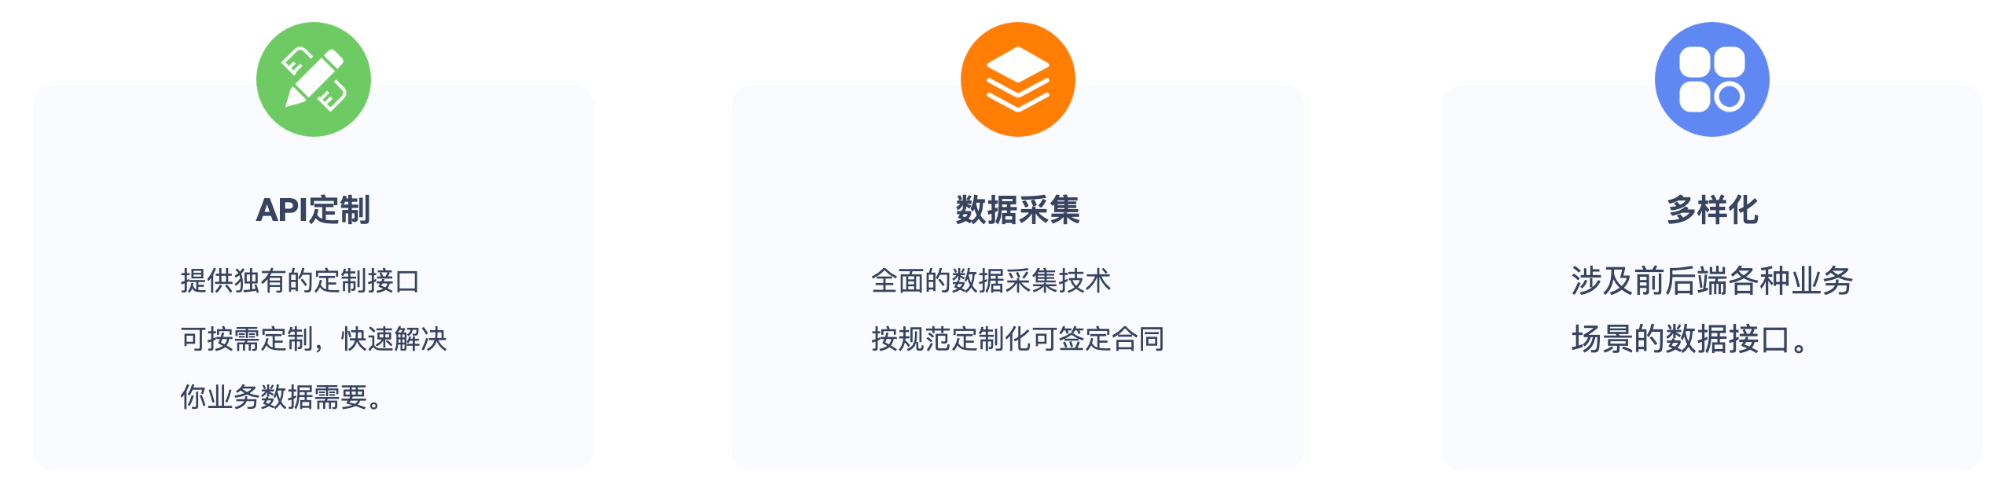 广州小程序api数据接口功能